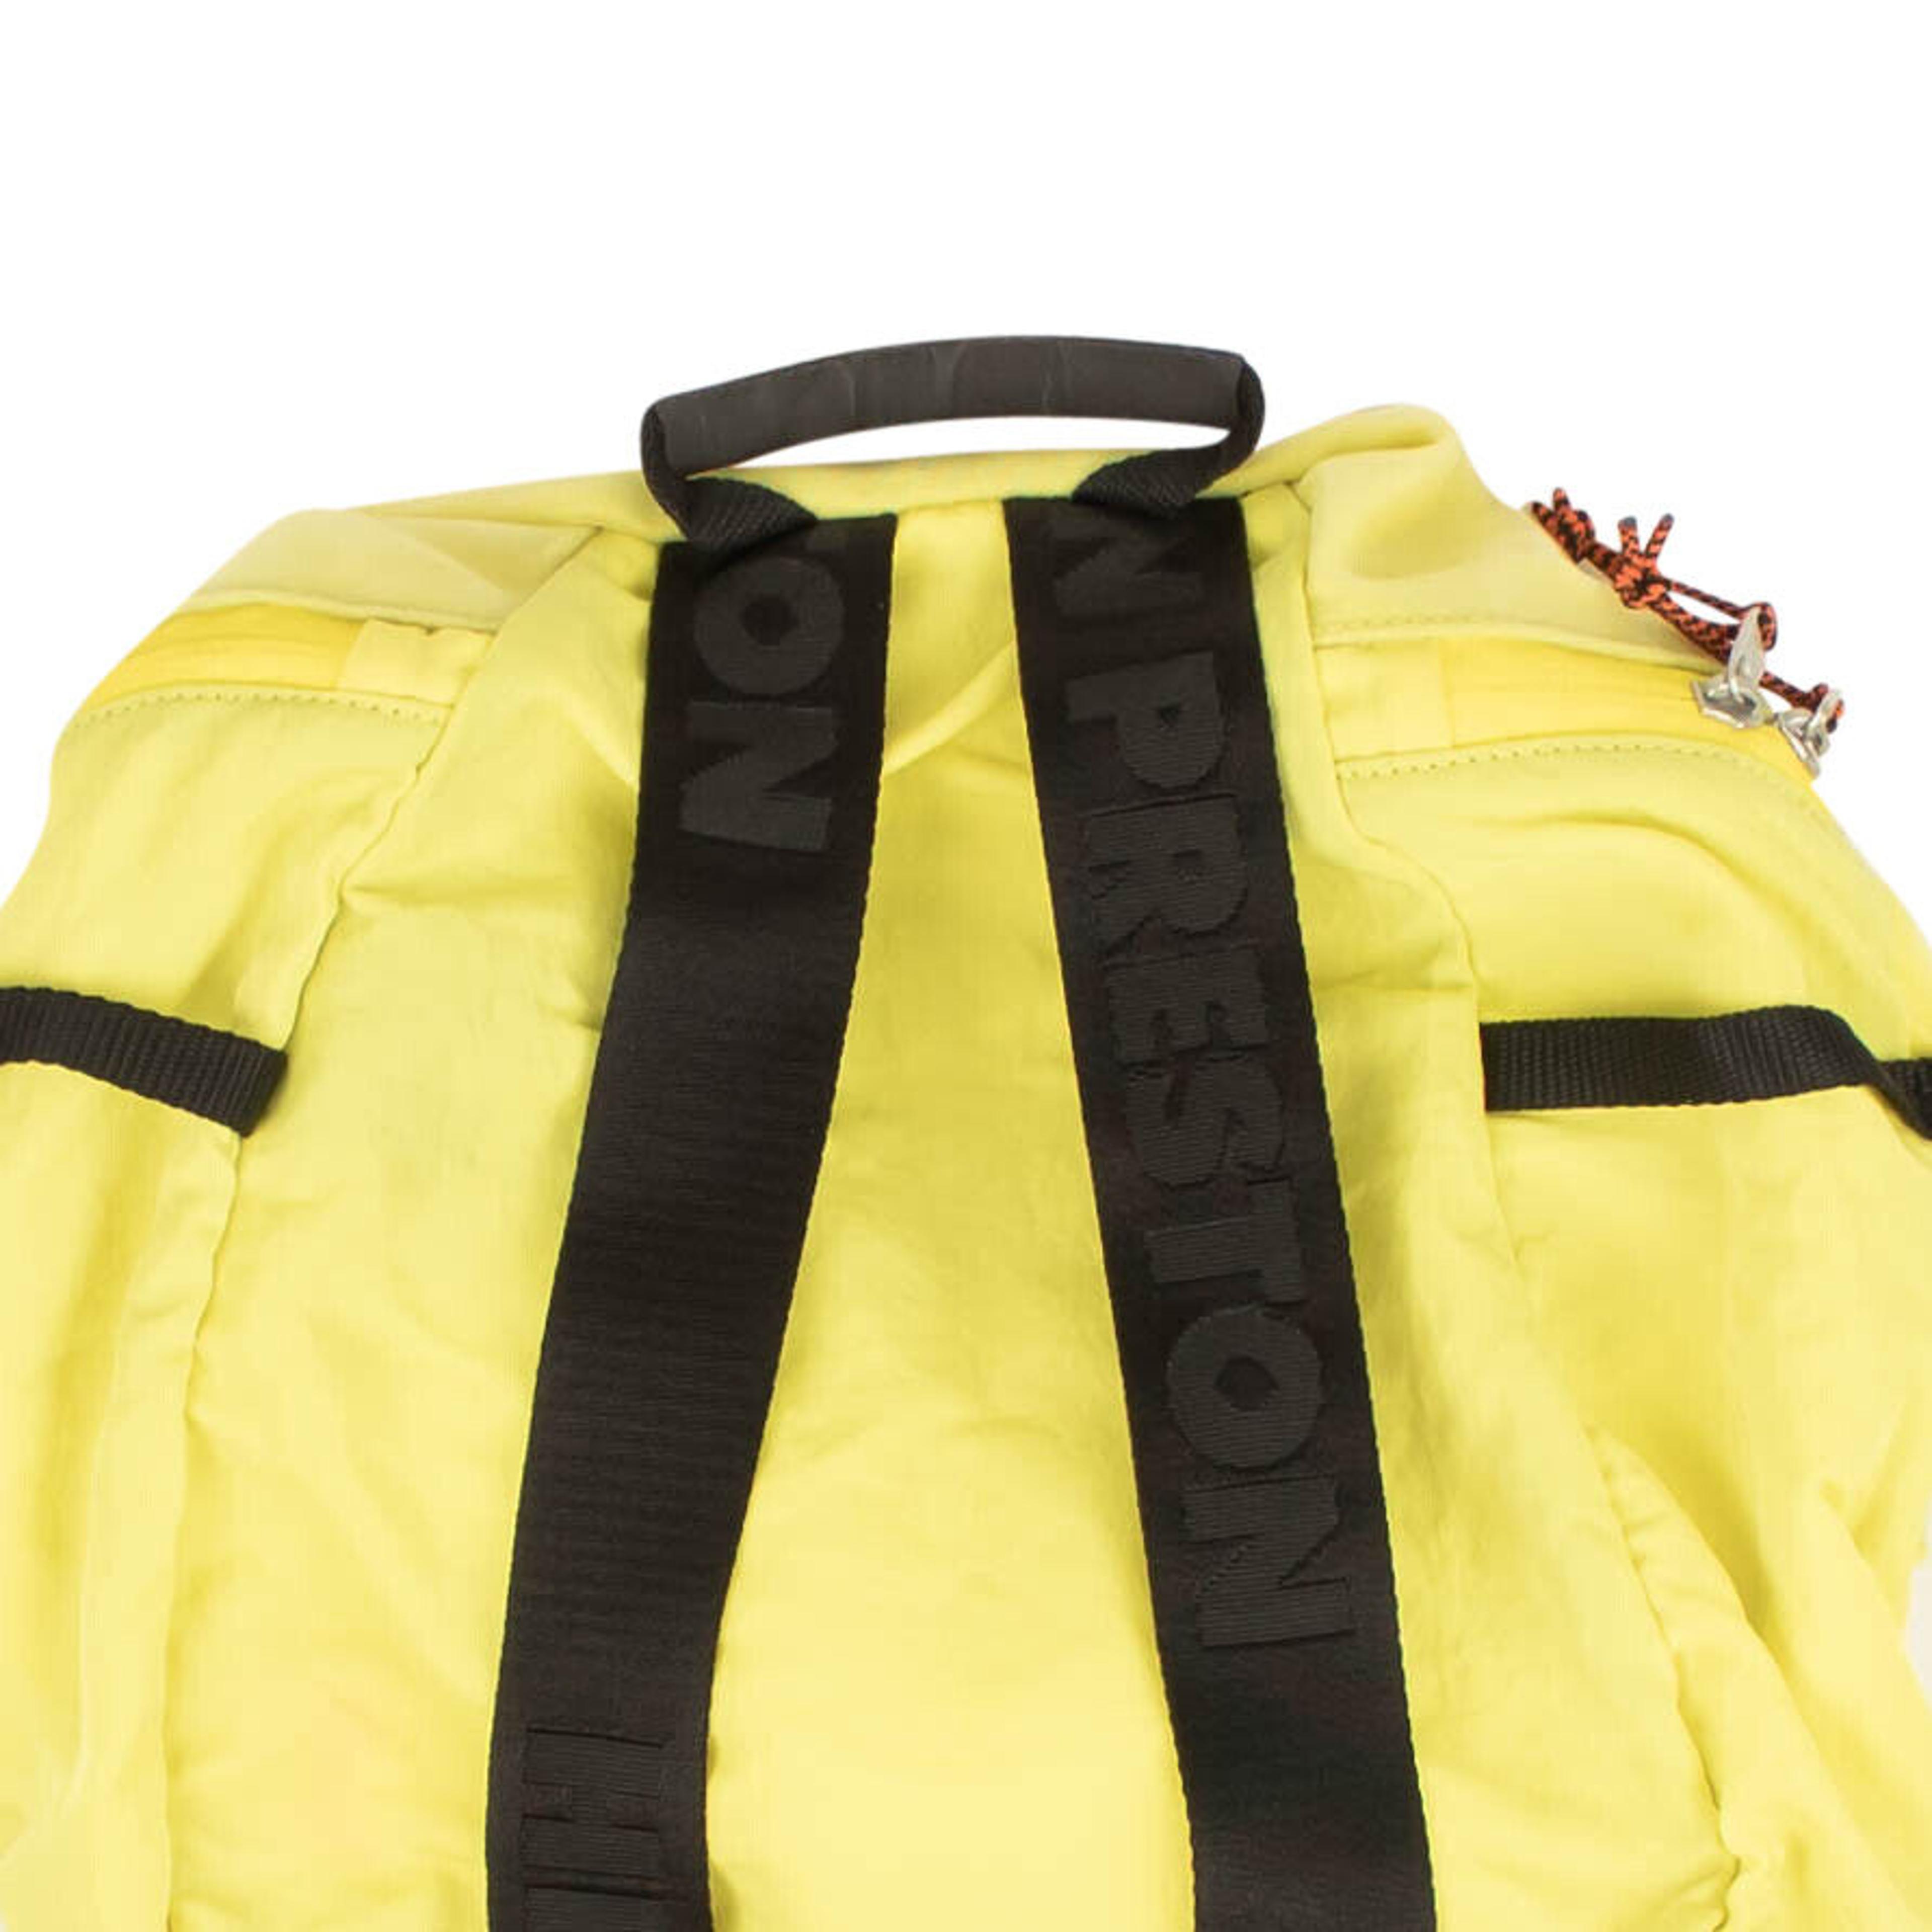 Alternate View 3 of Yellow Nylon Mesh Backpack